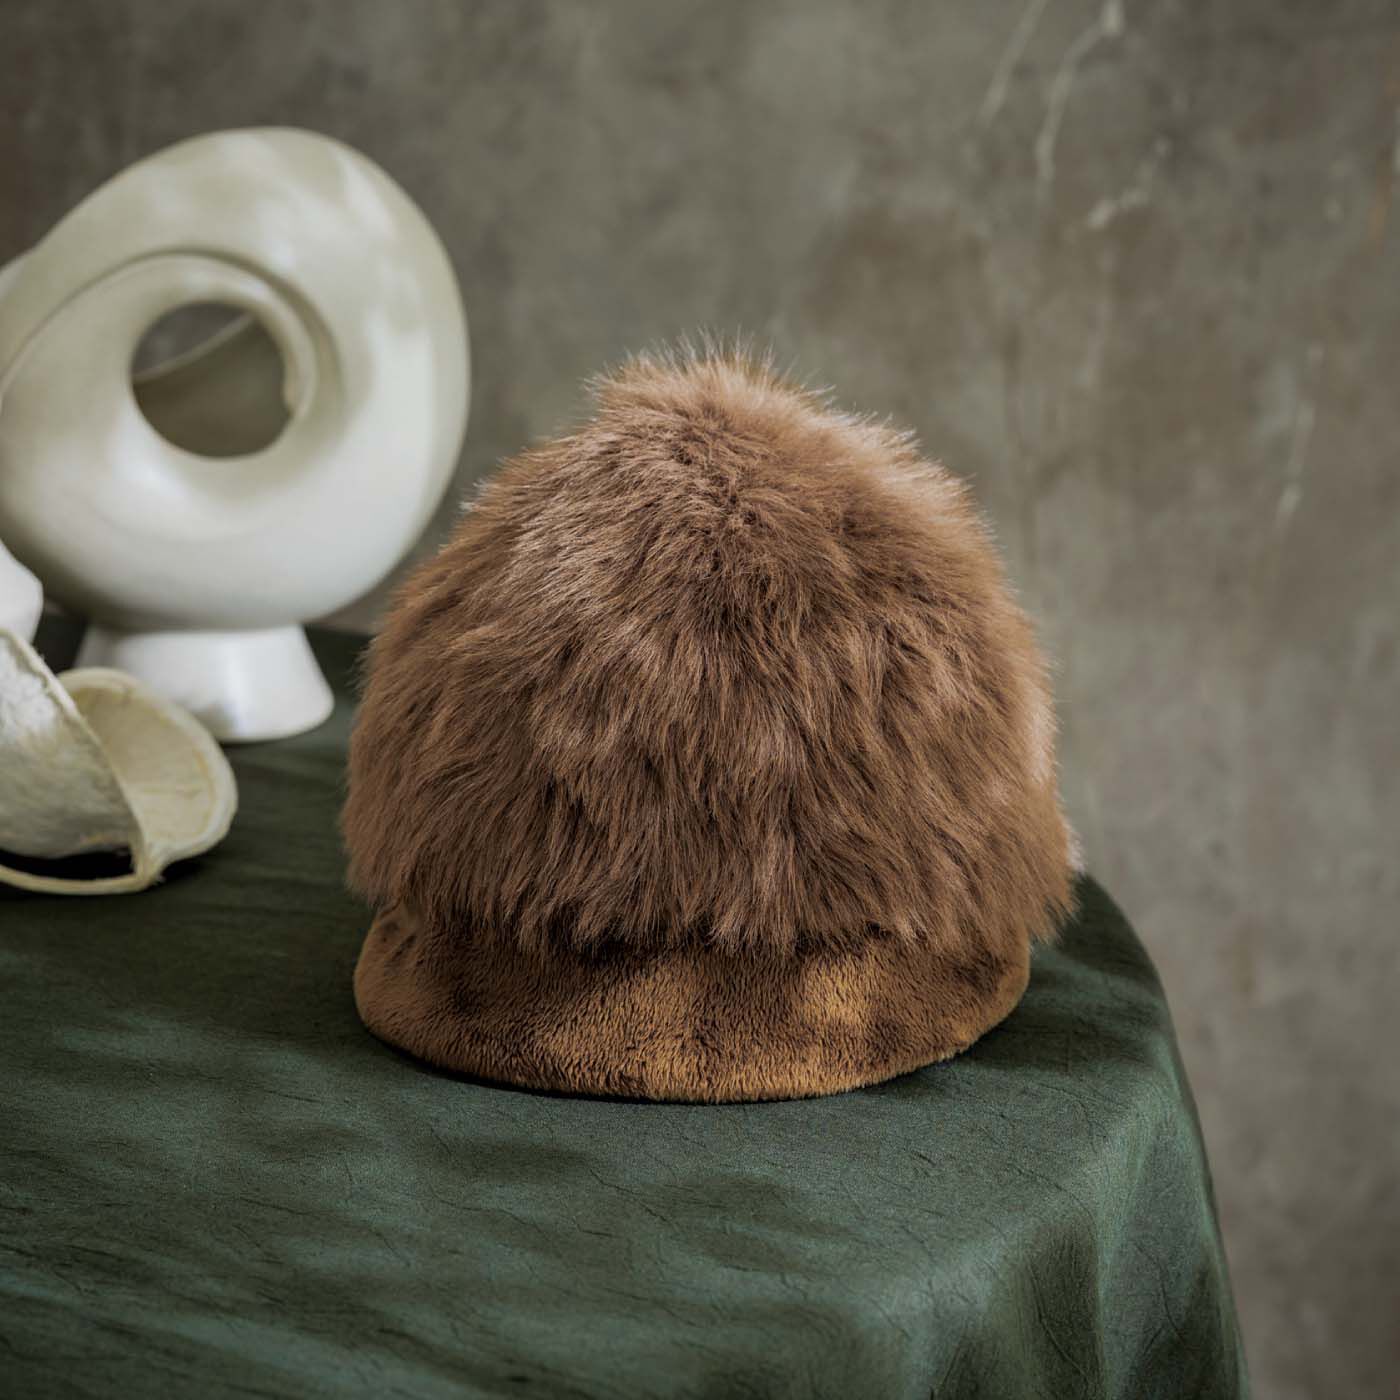 ミュージアム部|ミュージアム部　印象派画家モネが魅せられた原風景を想う 積みわらエコファー帽子